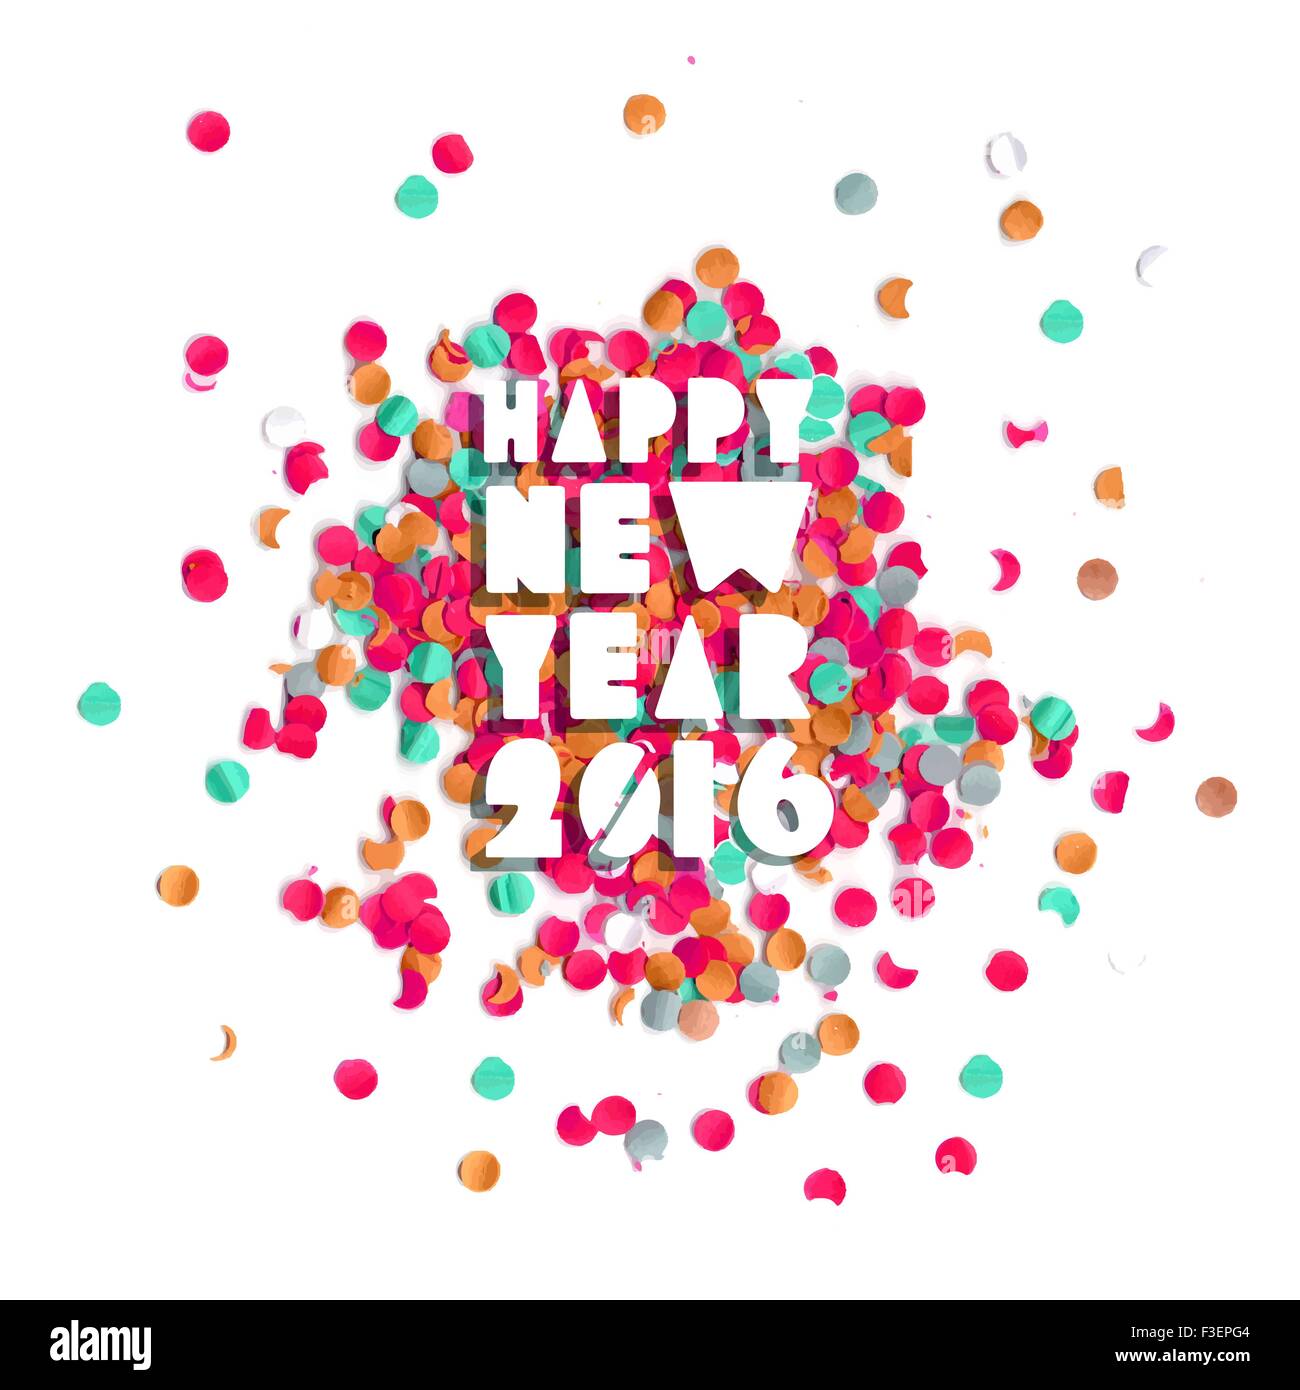 Frohes neues Jahrfeier 2016 mit Party Konfetti Vorlagenhintergrund. Ideal für Urlaub Grußkarte, Poster print und Web. Stock Vektor